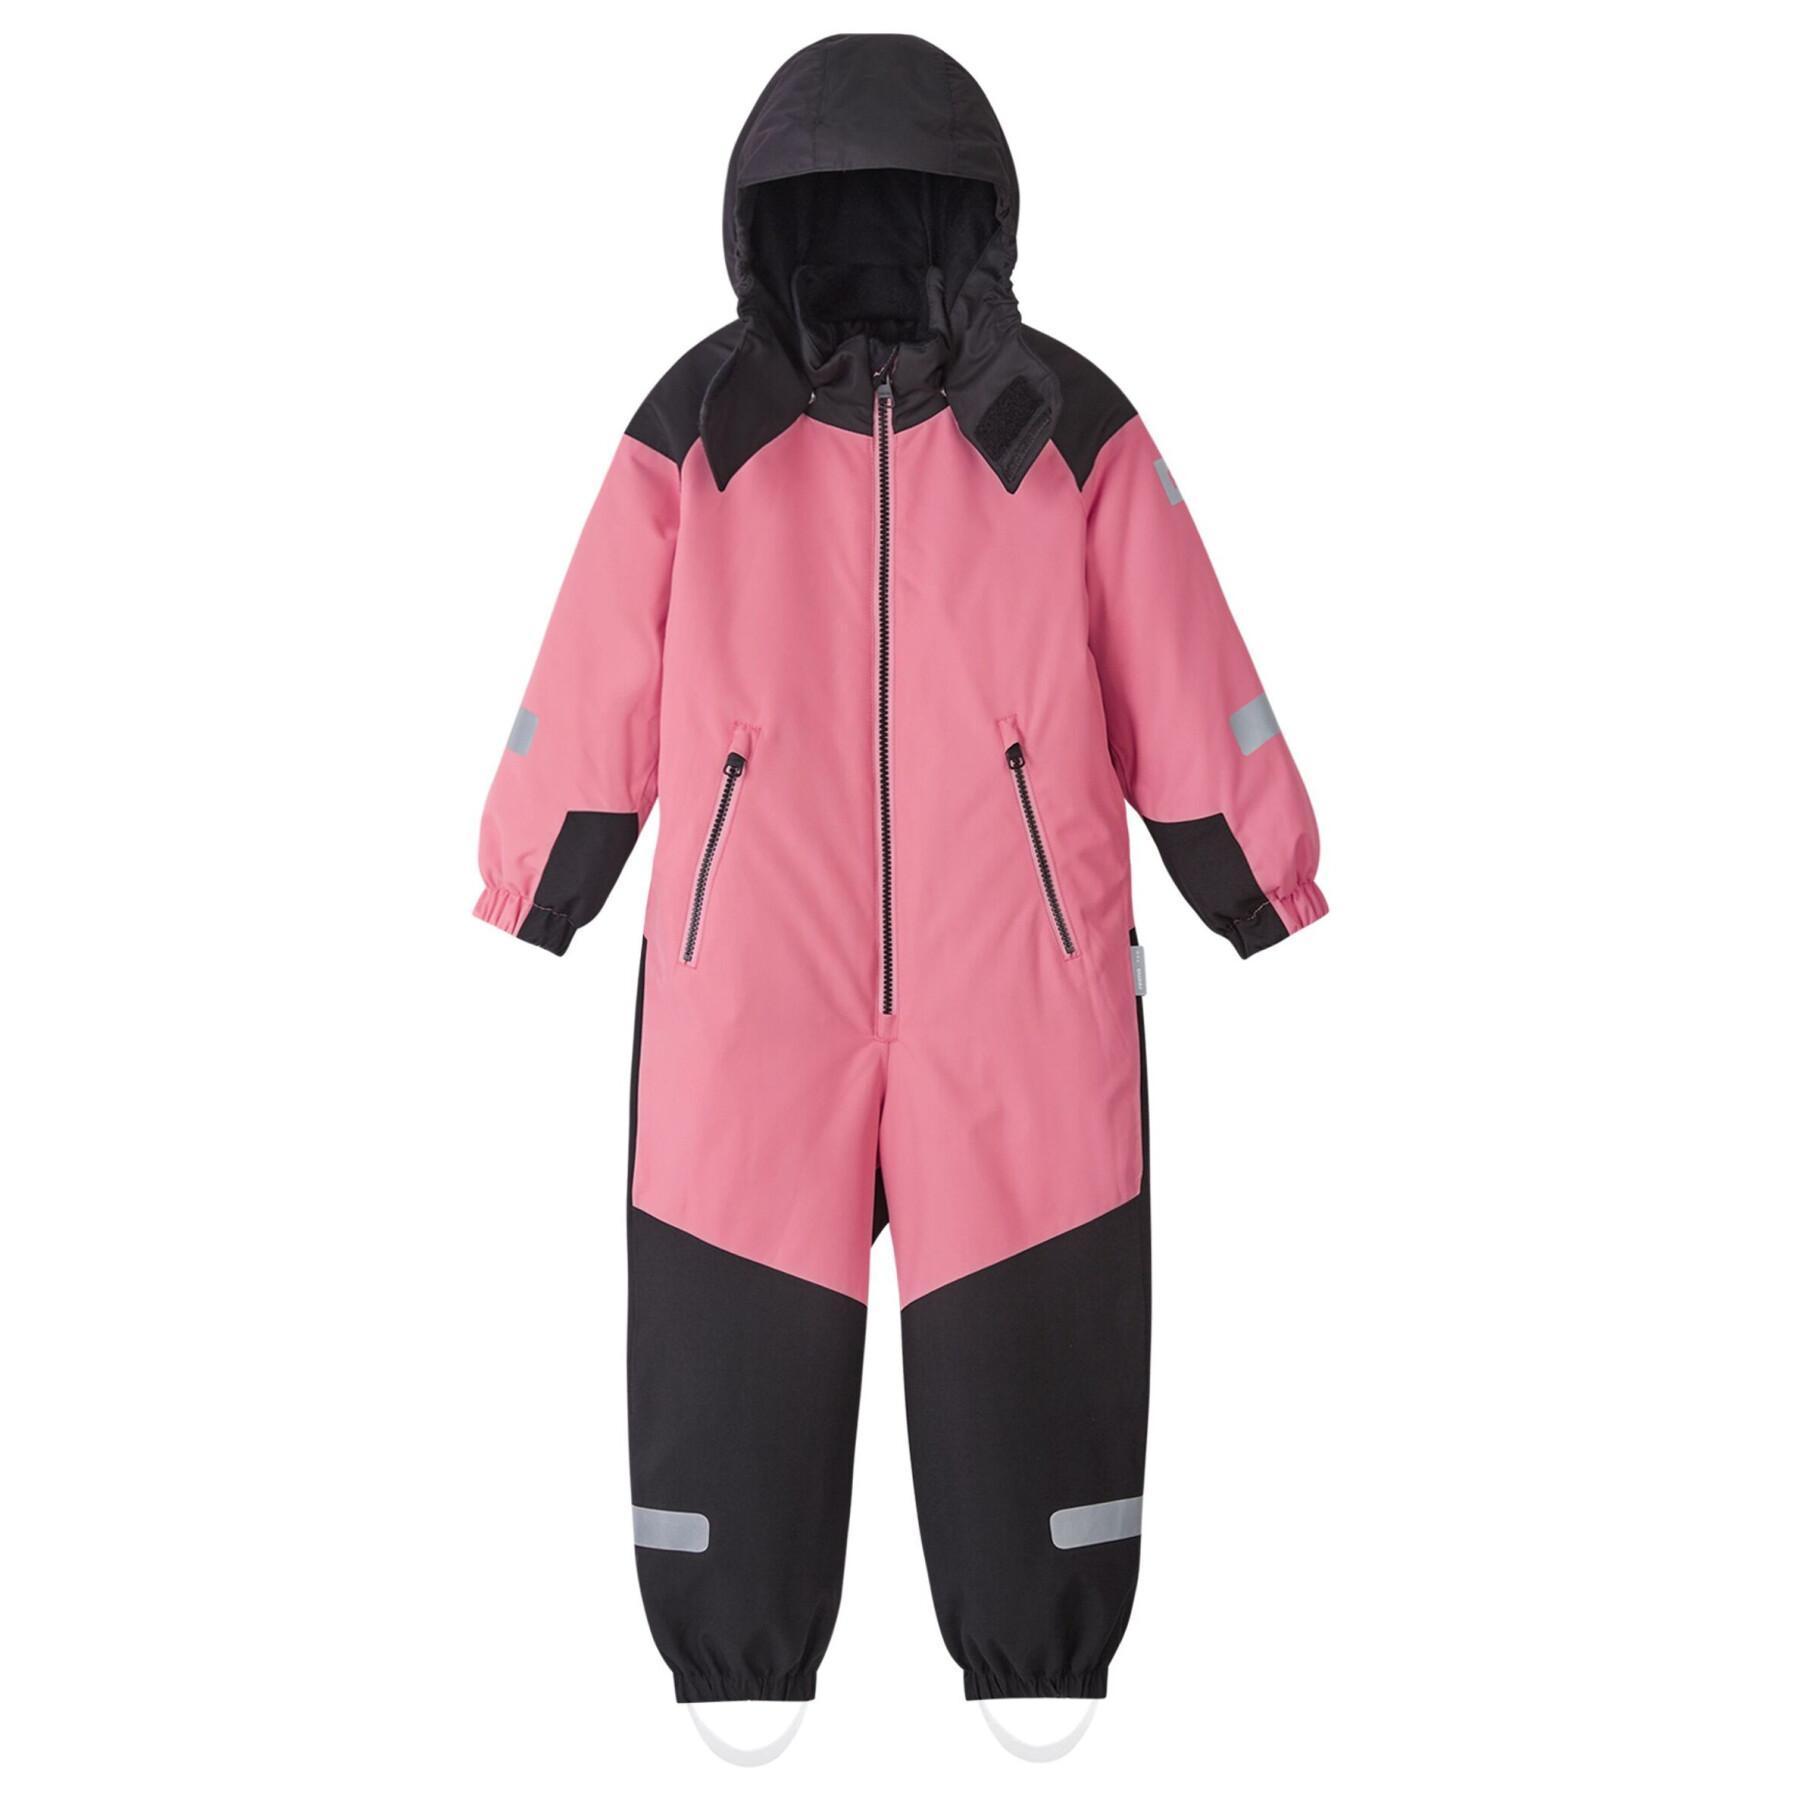 Ski suit for girls Reima Reima tec Kauhava